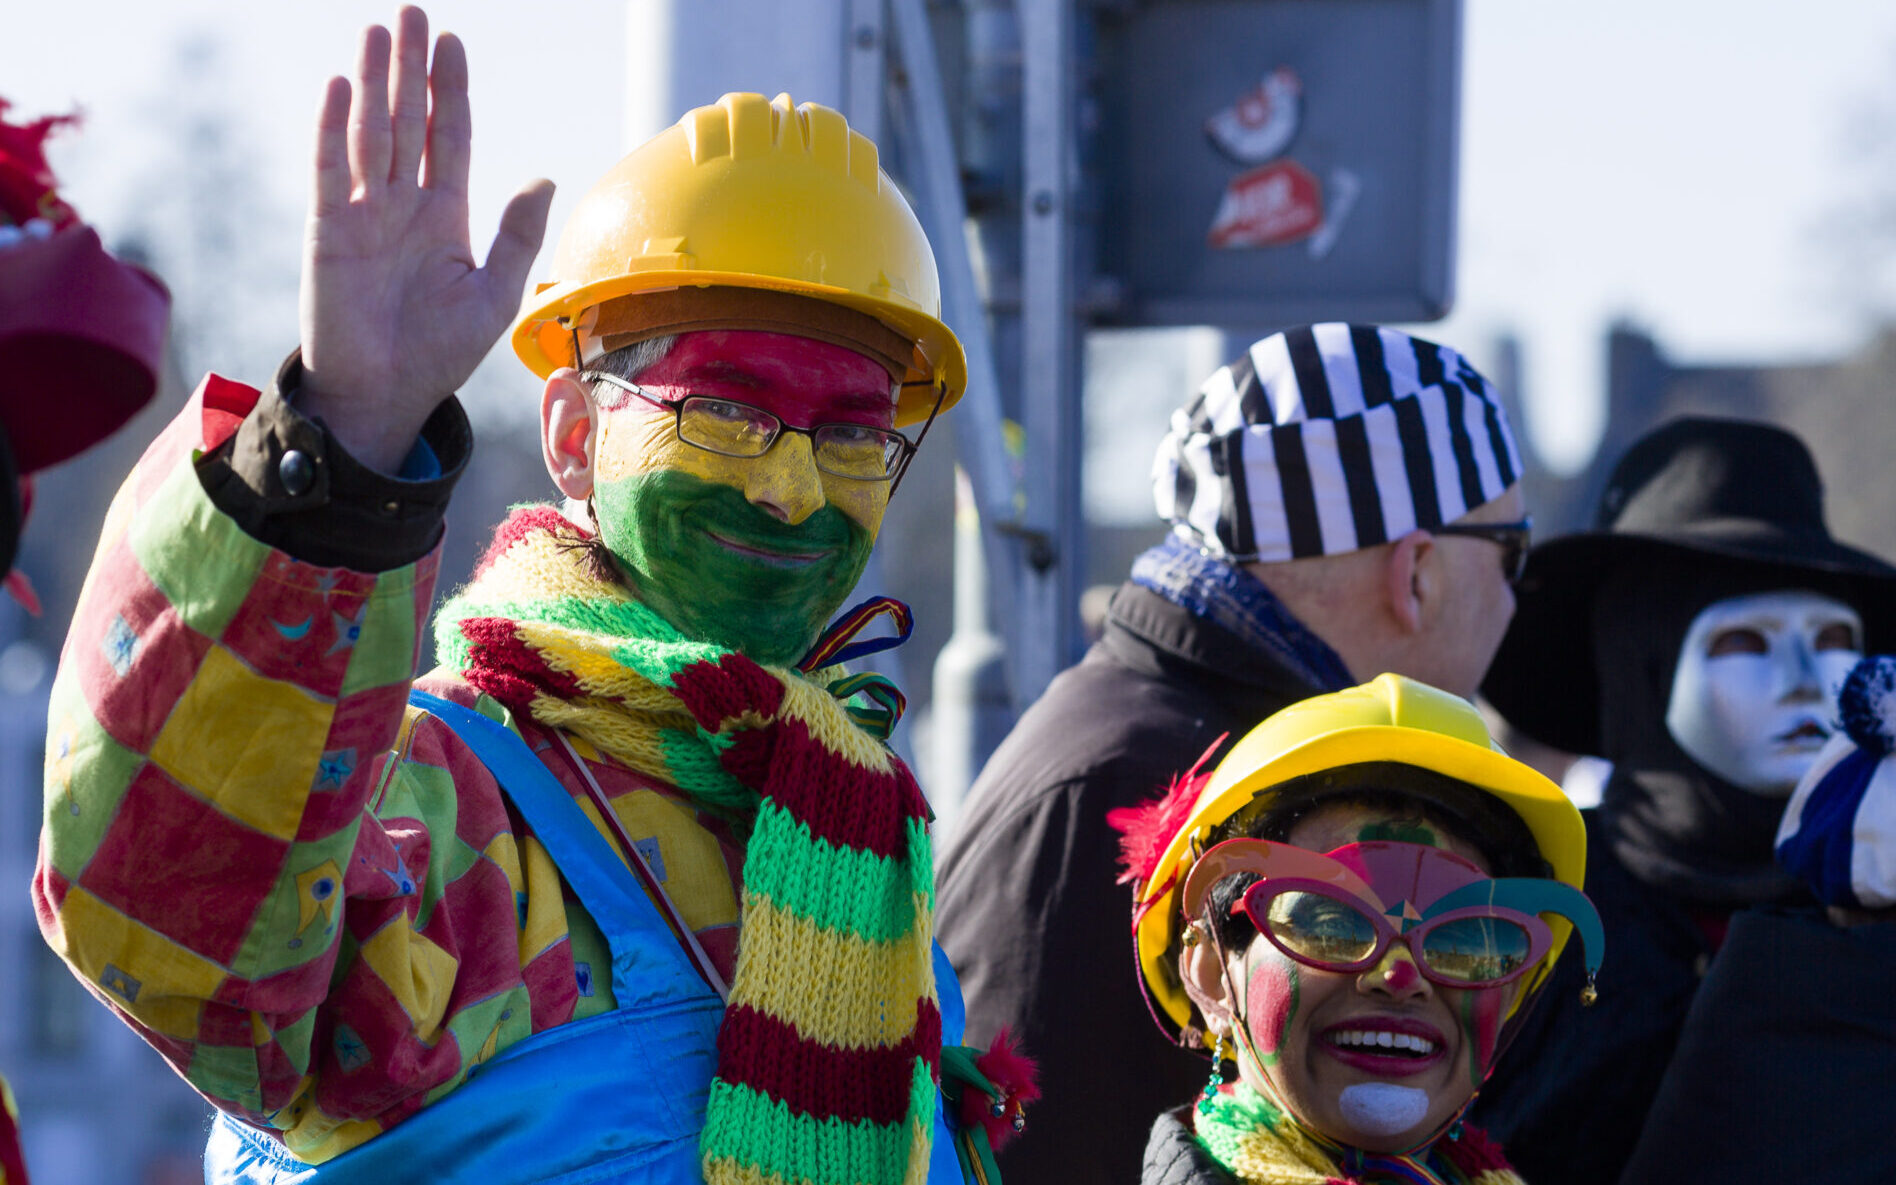 Gehuurd Varken Philadelphia Ook carnaval kent een dresscode - ModMod